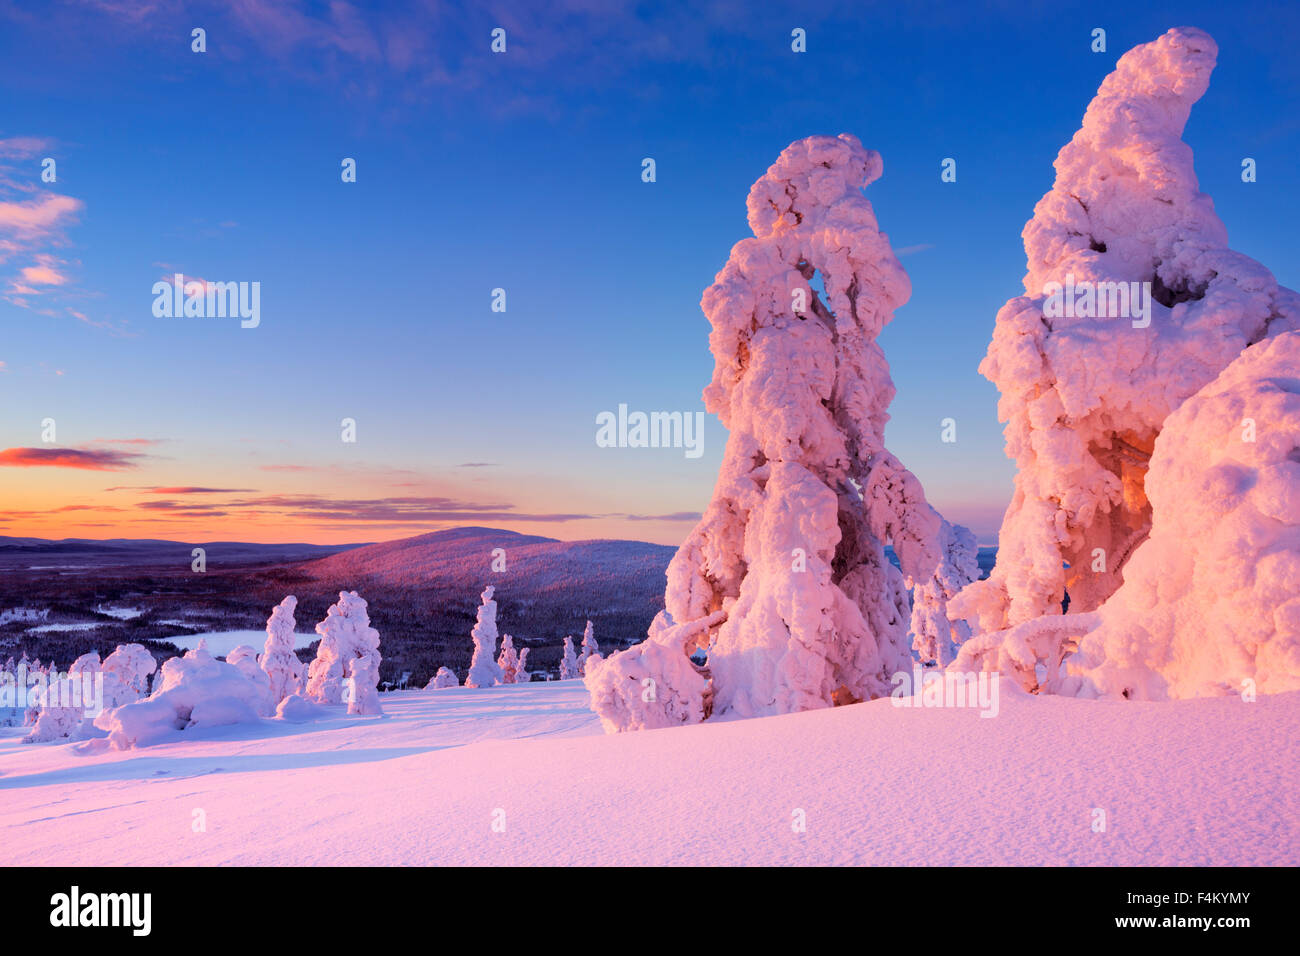 Les arbres gelés sur le dessus de la Levi Fell en Laponie finlandaise. Photographié au coucher du soleil. Banque D'Images